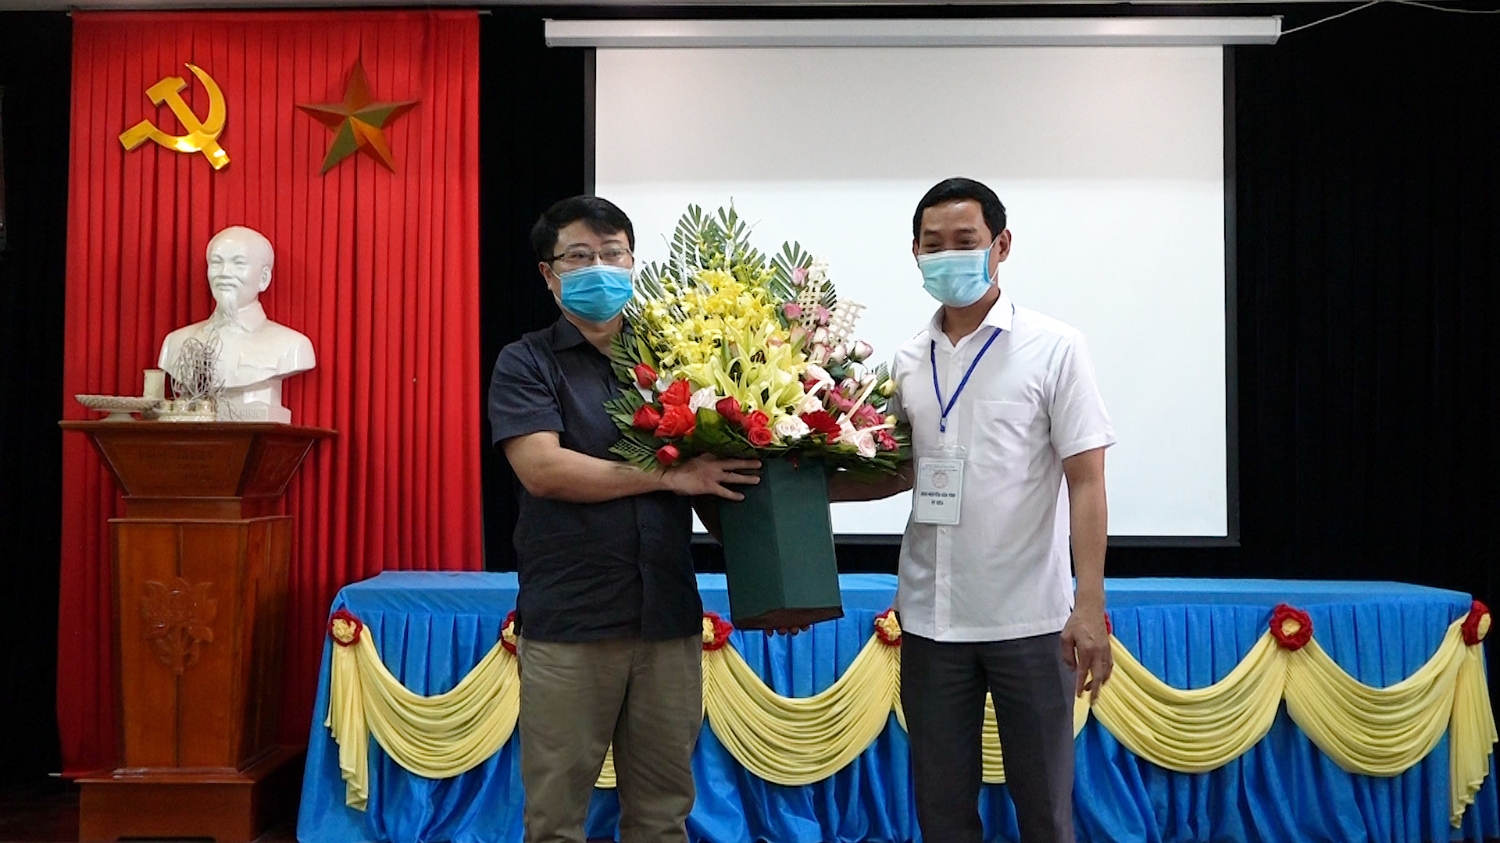 Đồng chí Nguyễn Văn TìnhThUV, Phó Chủ tịch UBND thị xã Ba Đồn đã đến thăm, động viên đội ngũ cán bộ, giáo viên và nhân viên tại điểm thi trường THPT Lương Thế Vinh